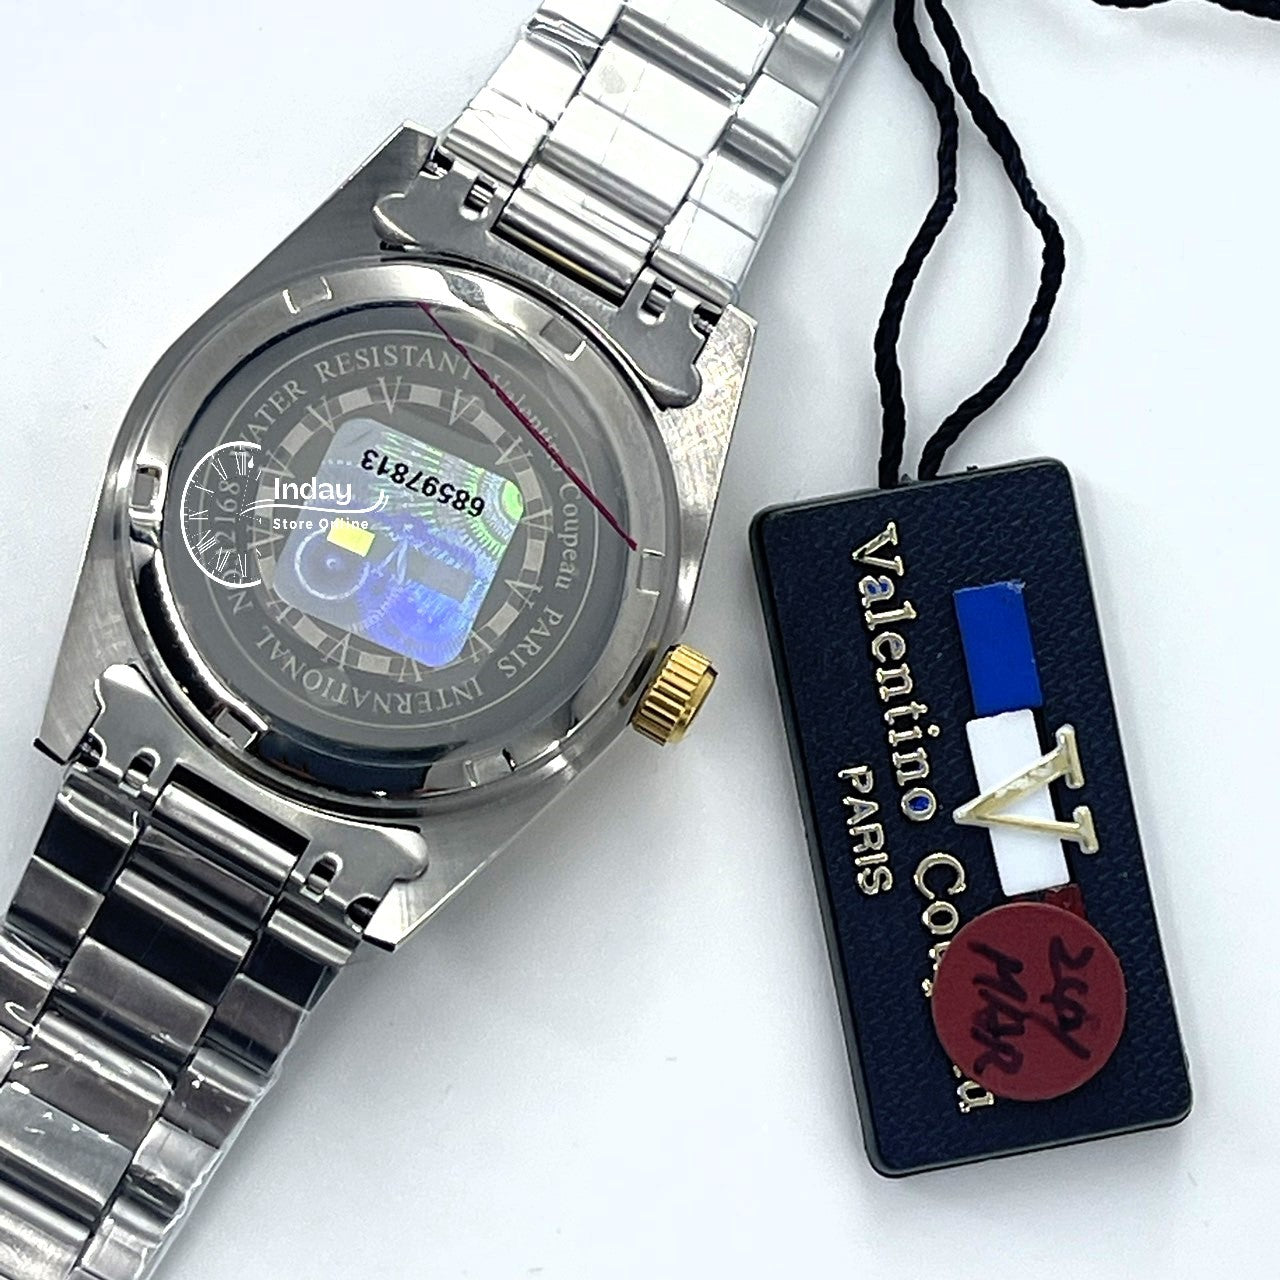 范倫鐵諾 古柏 Coupeau Men's Watch 12168TM-17 Two-Tone Stainless Steel Band